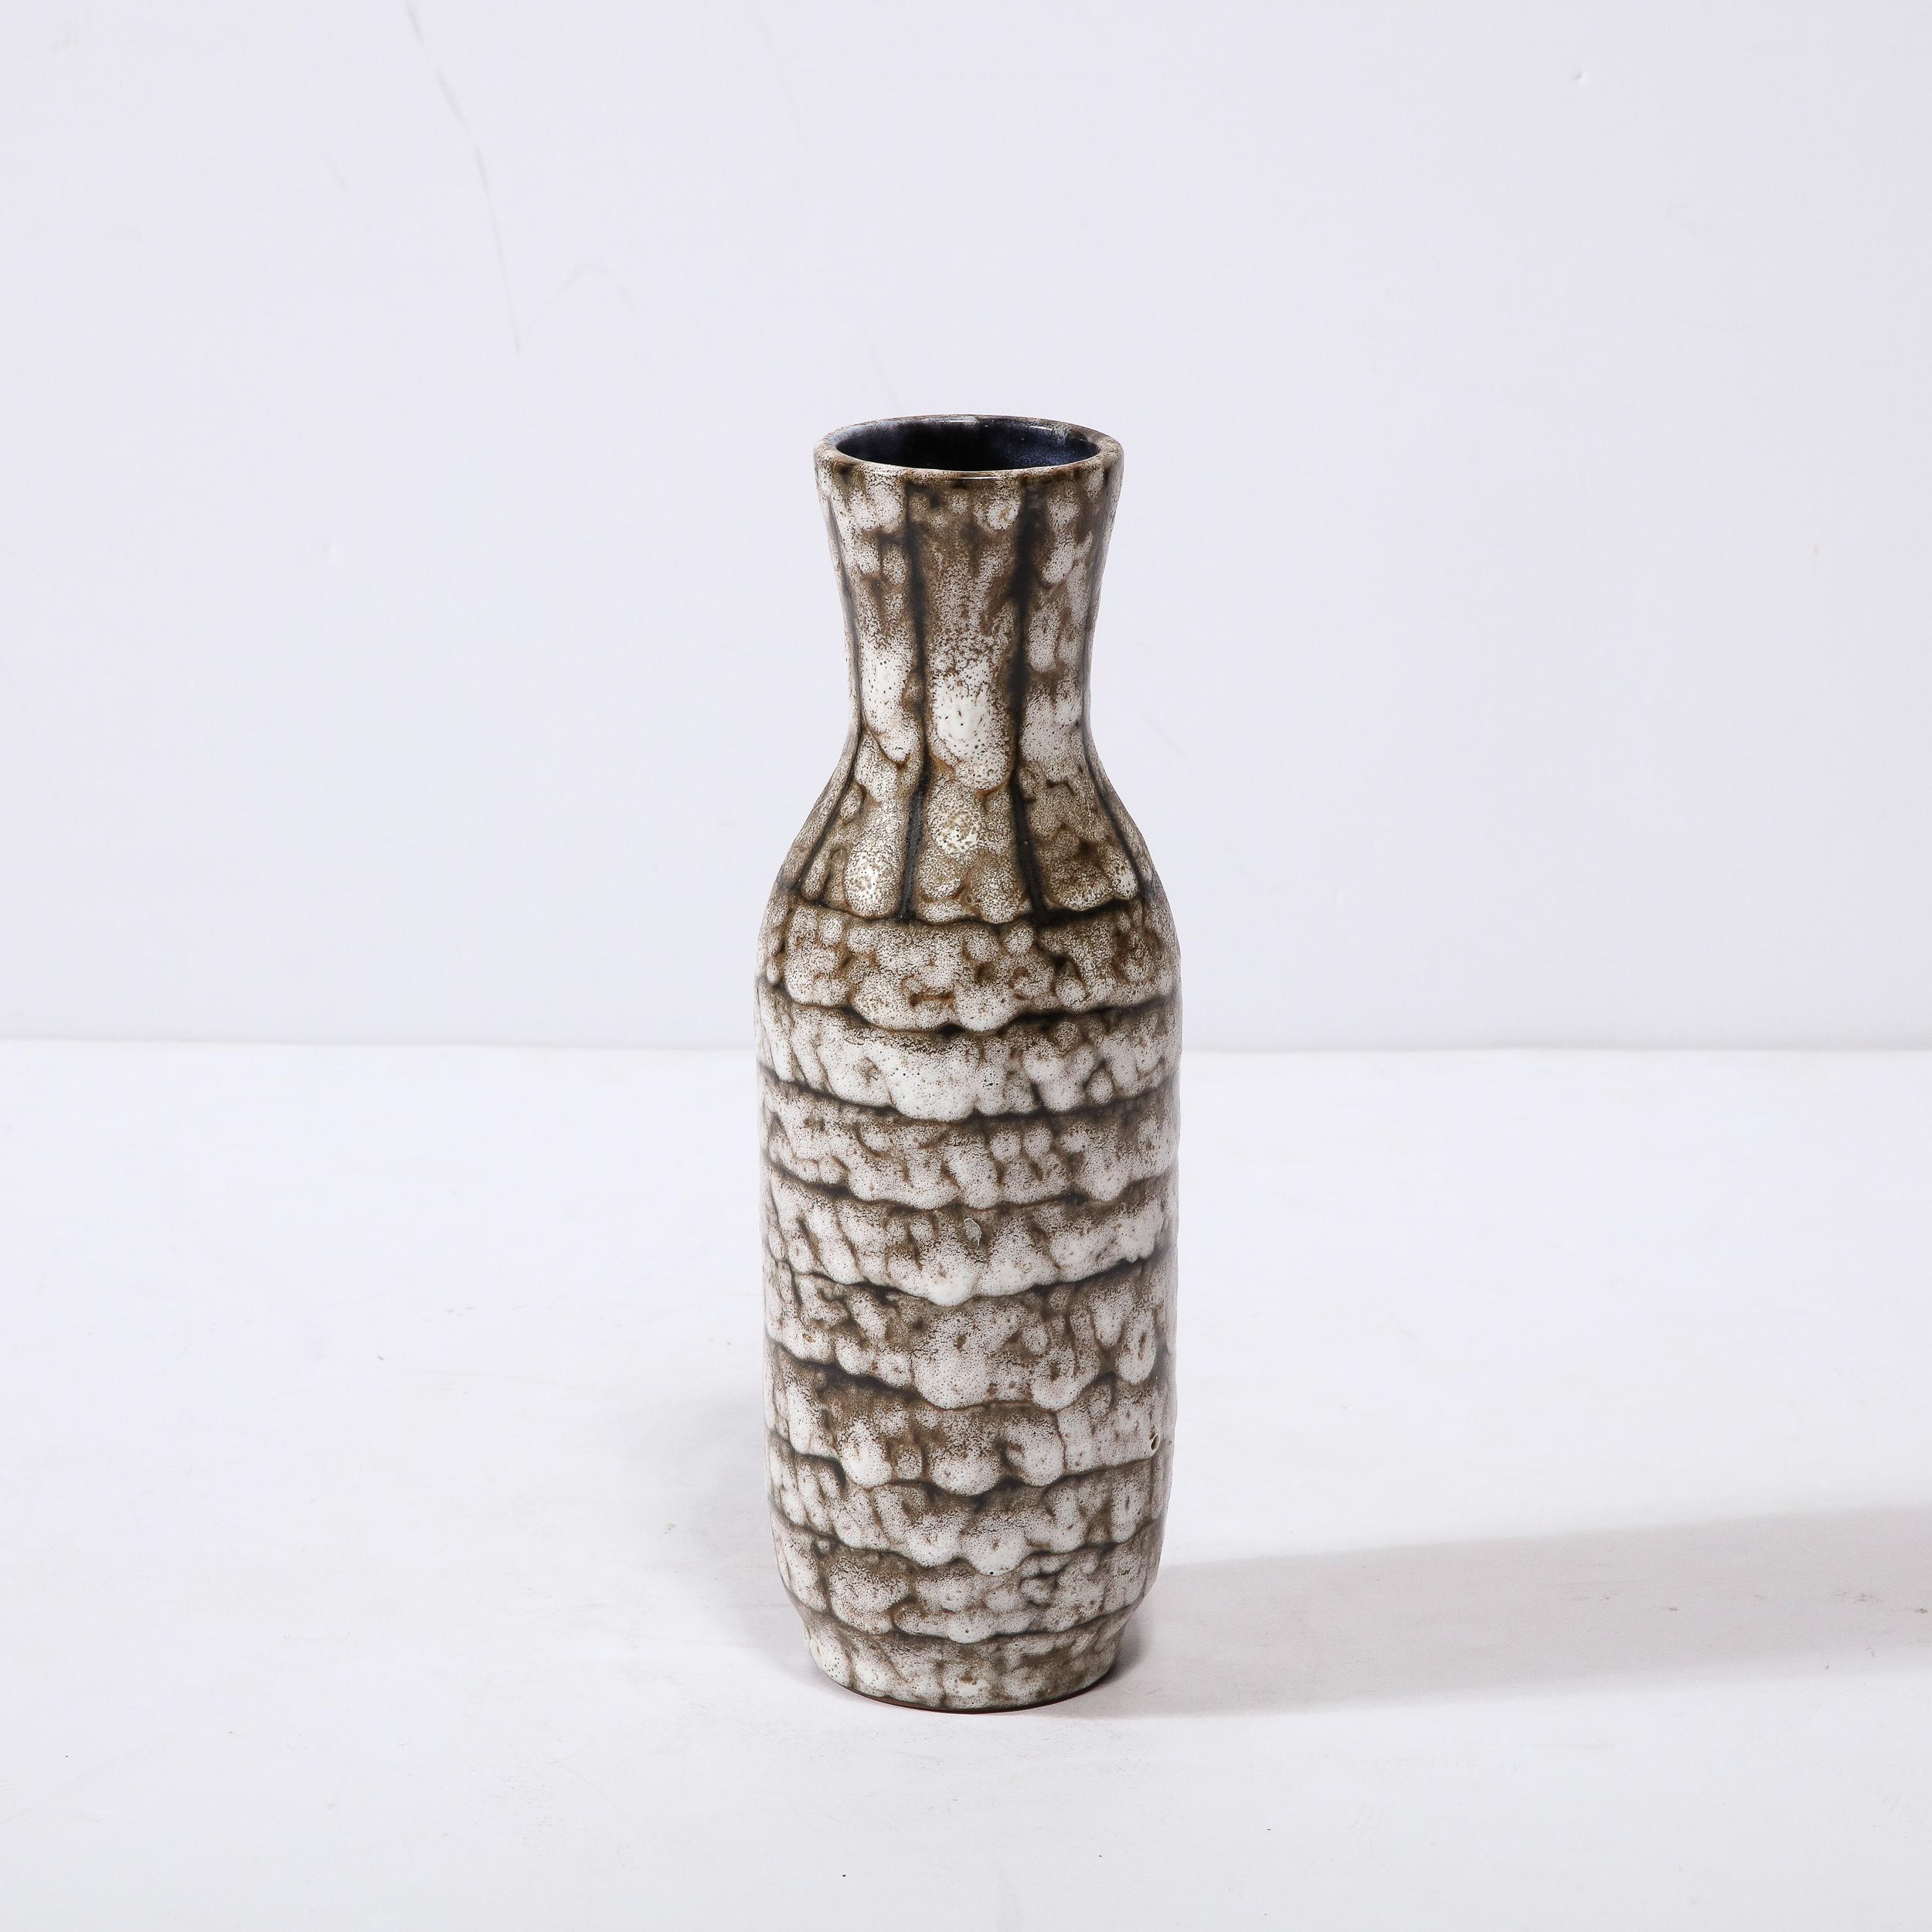 Ce vase en céramique moderniste du milieu du siècle avec des détails en bandes est un bel exemple de céramique européenne d'après-guerre, réalisé à Hódmezovasarhely Majolikagyár, en Hongrie, vers 1960. Avec une finition texturale étonnante composée